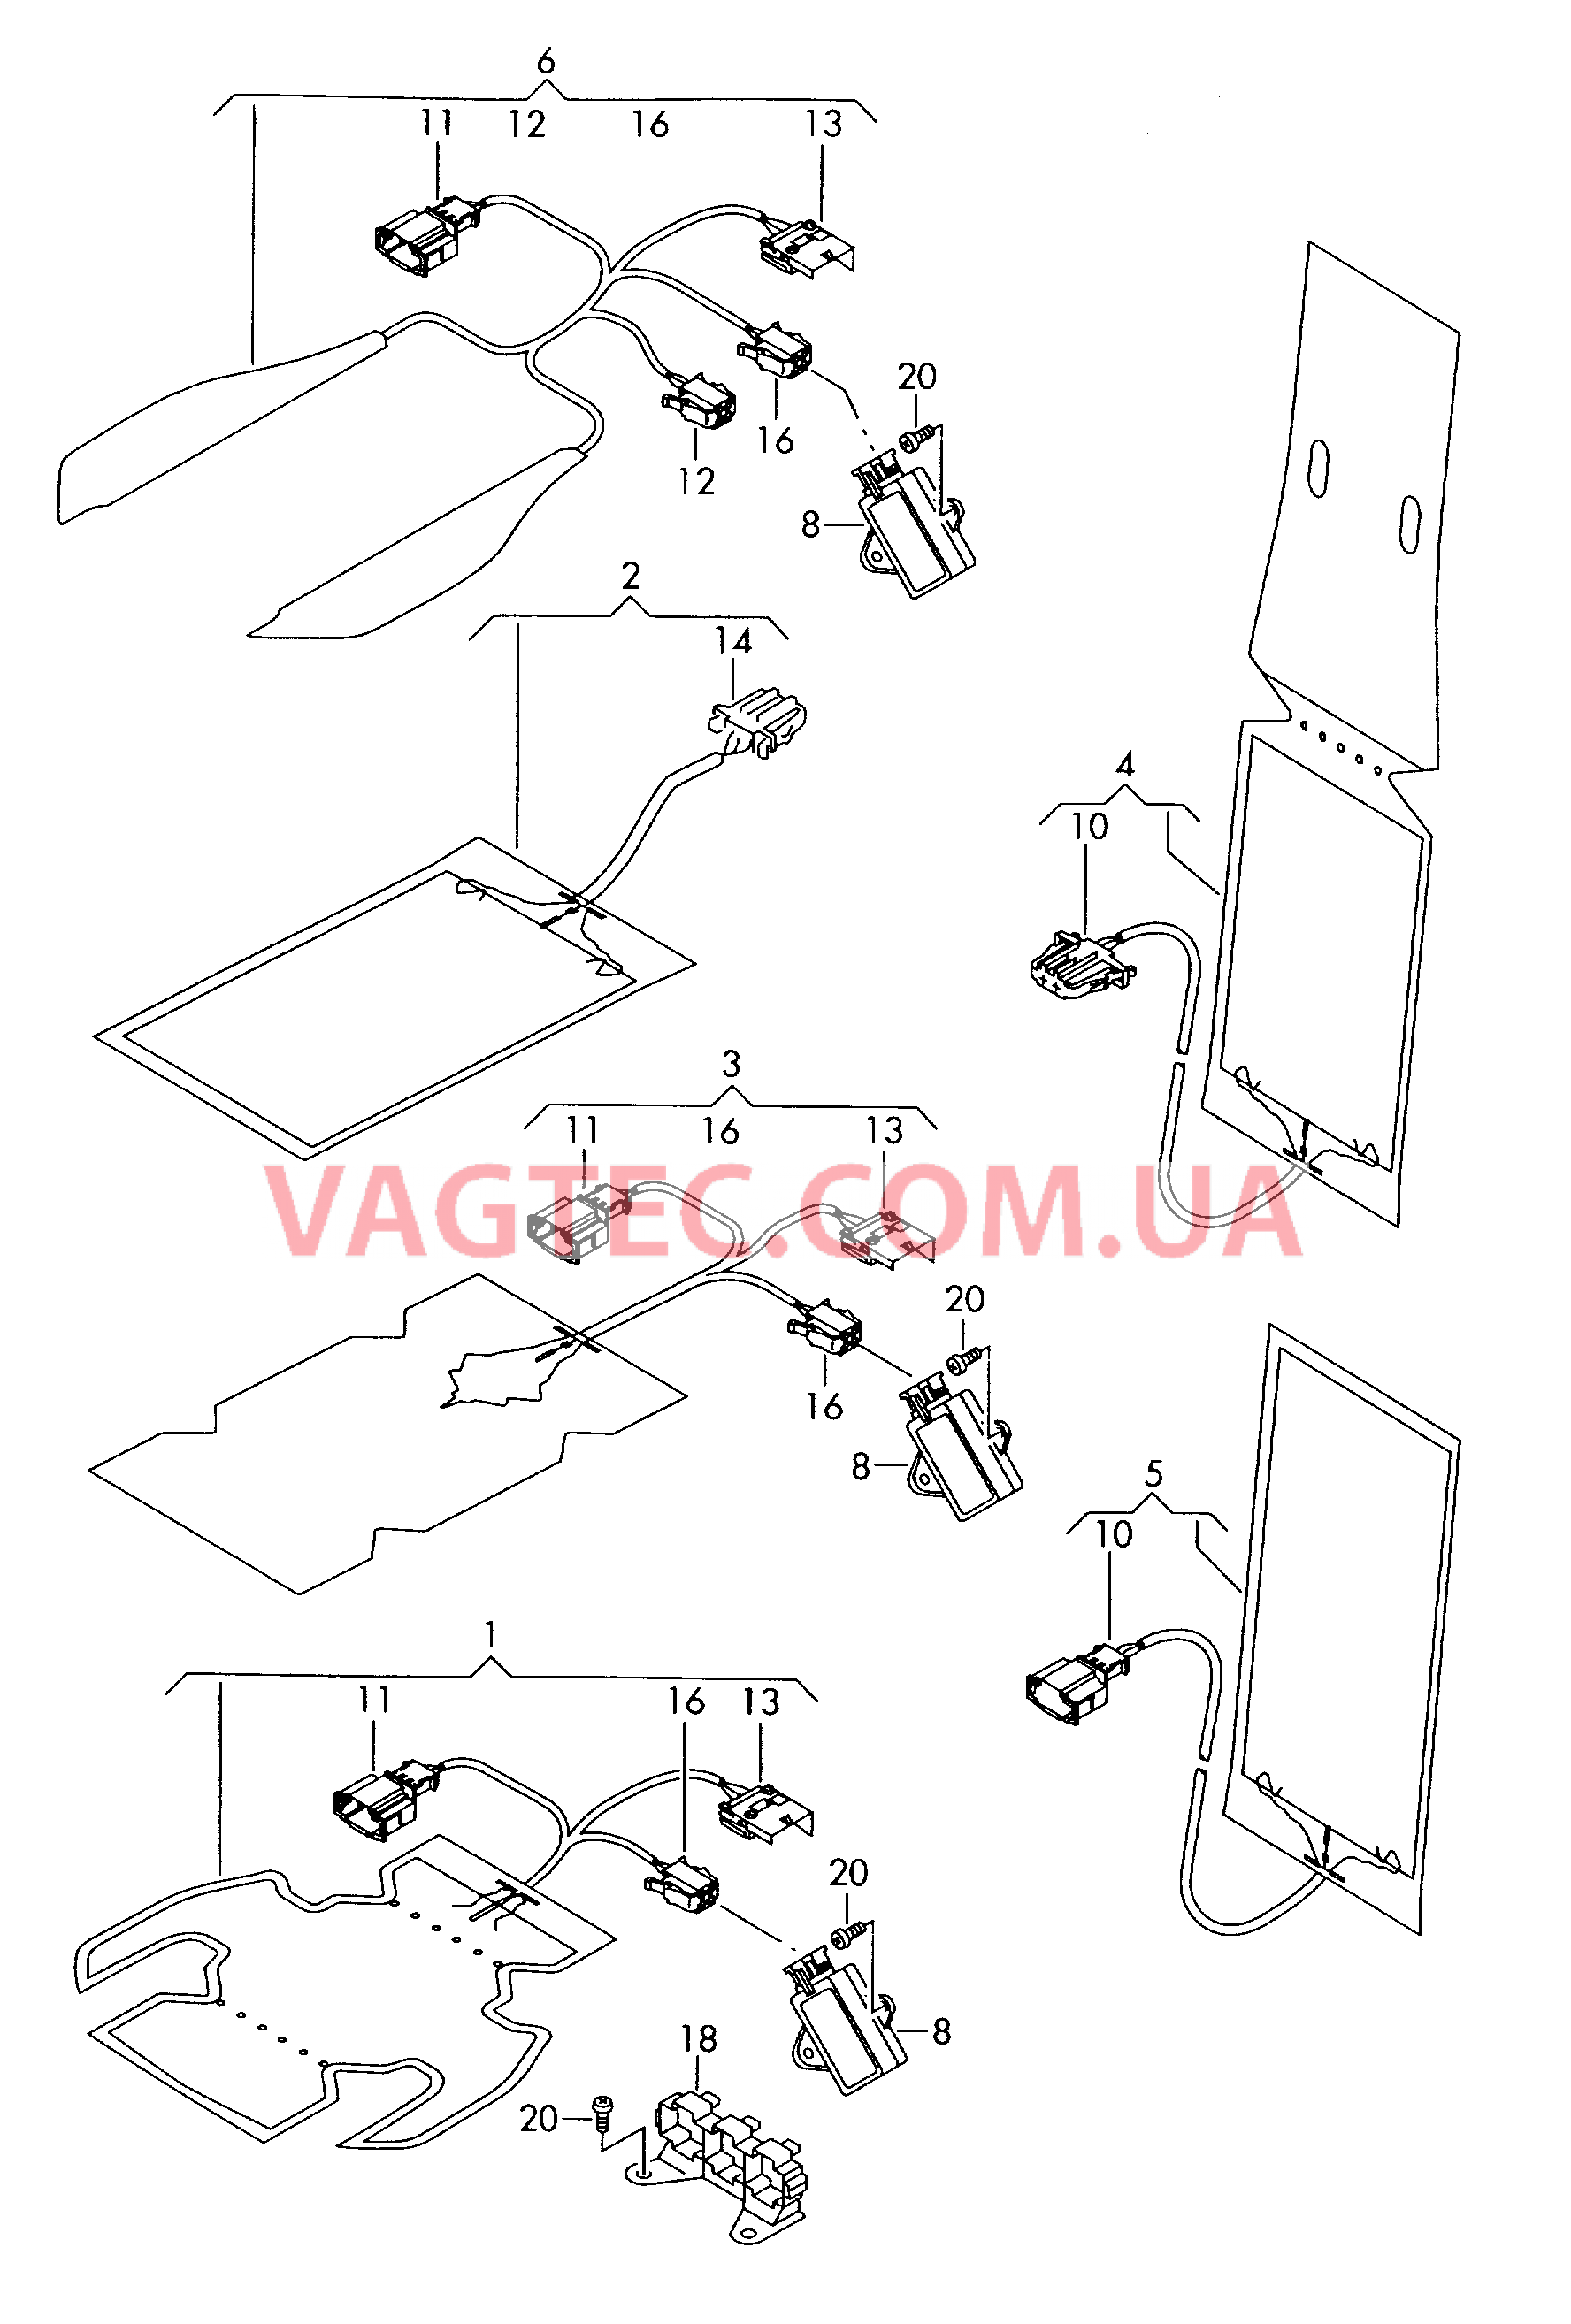 Электродетали для обогрева подушки и спинки сиденья  для VOLKSWAGEN Polo 2005-1